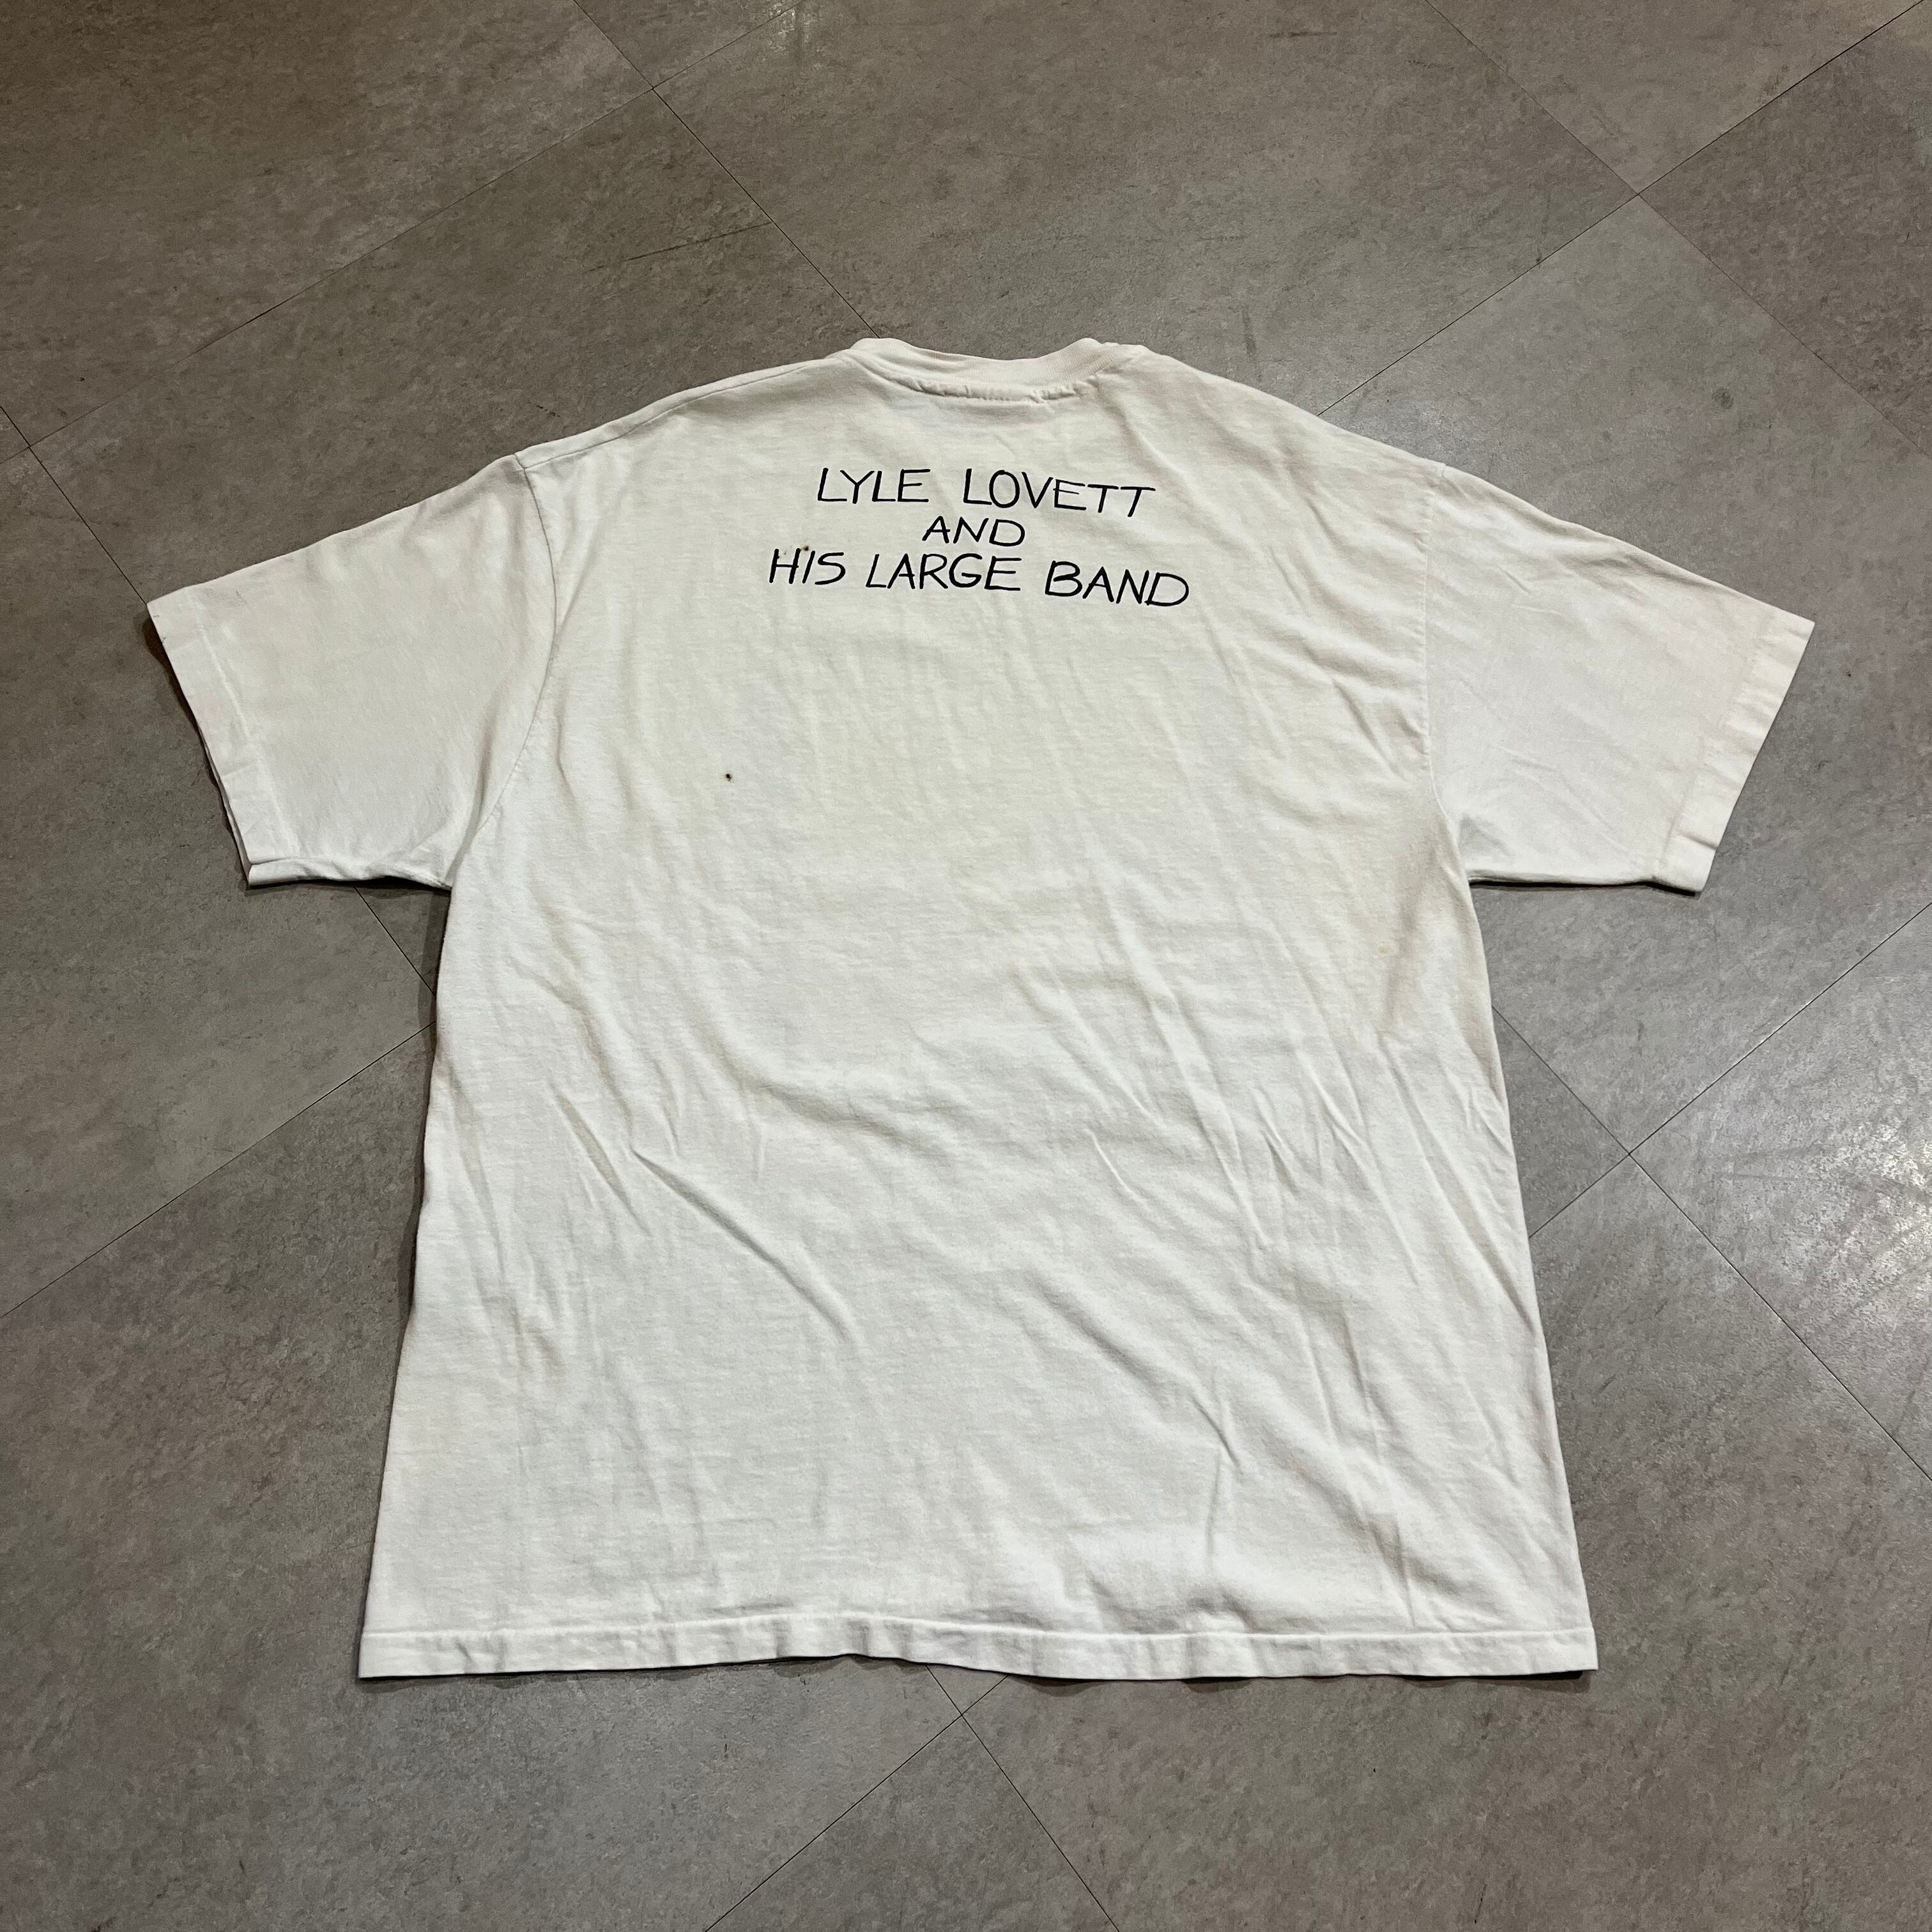 90年代 TSHIRT EXPRESS ALIZAY バンドTシャツ バンT USA製 メンズL ヴィンテージ /eaa343156